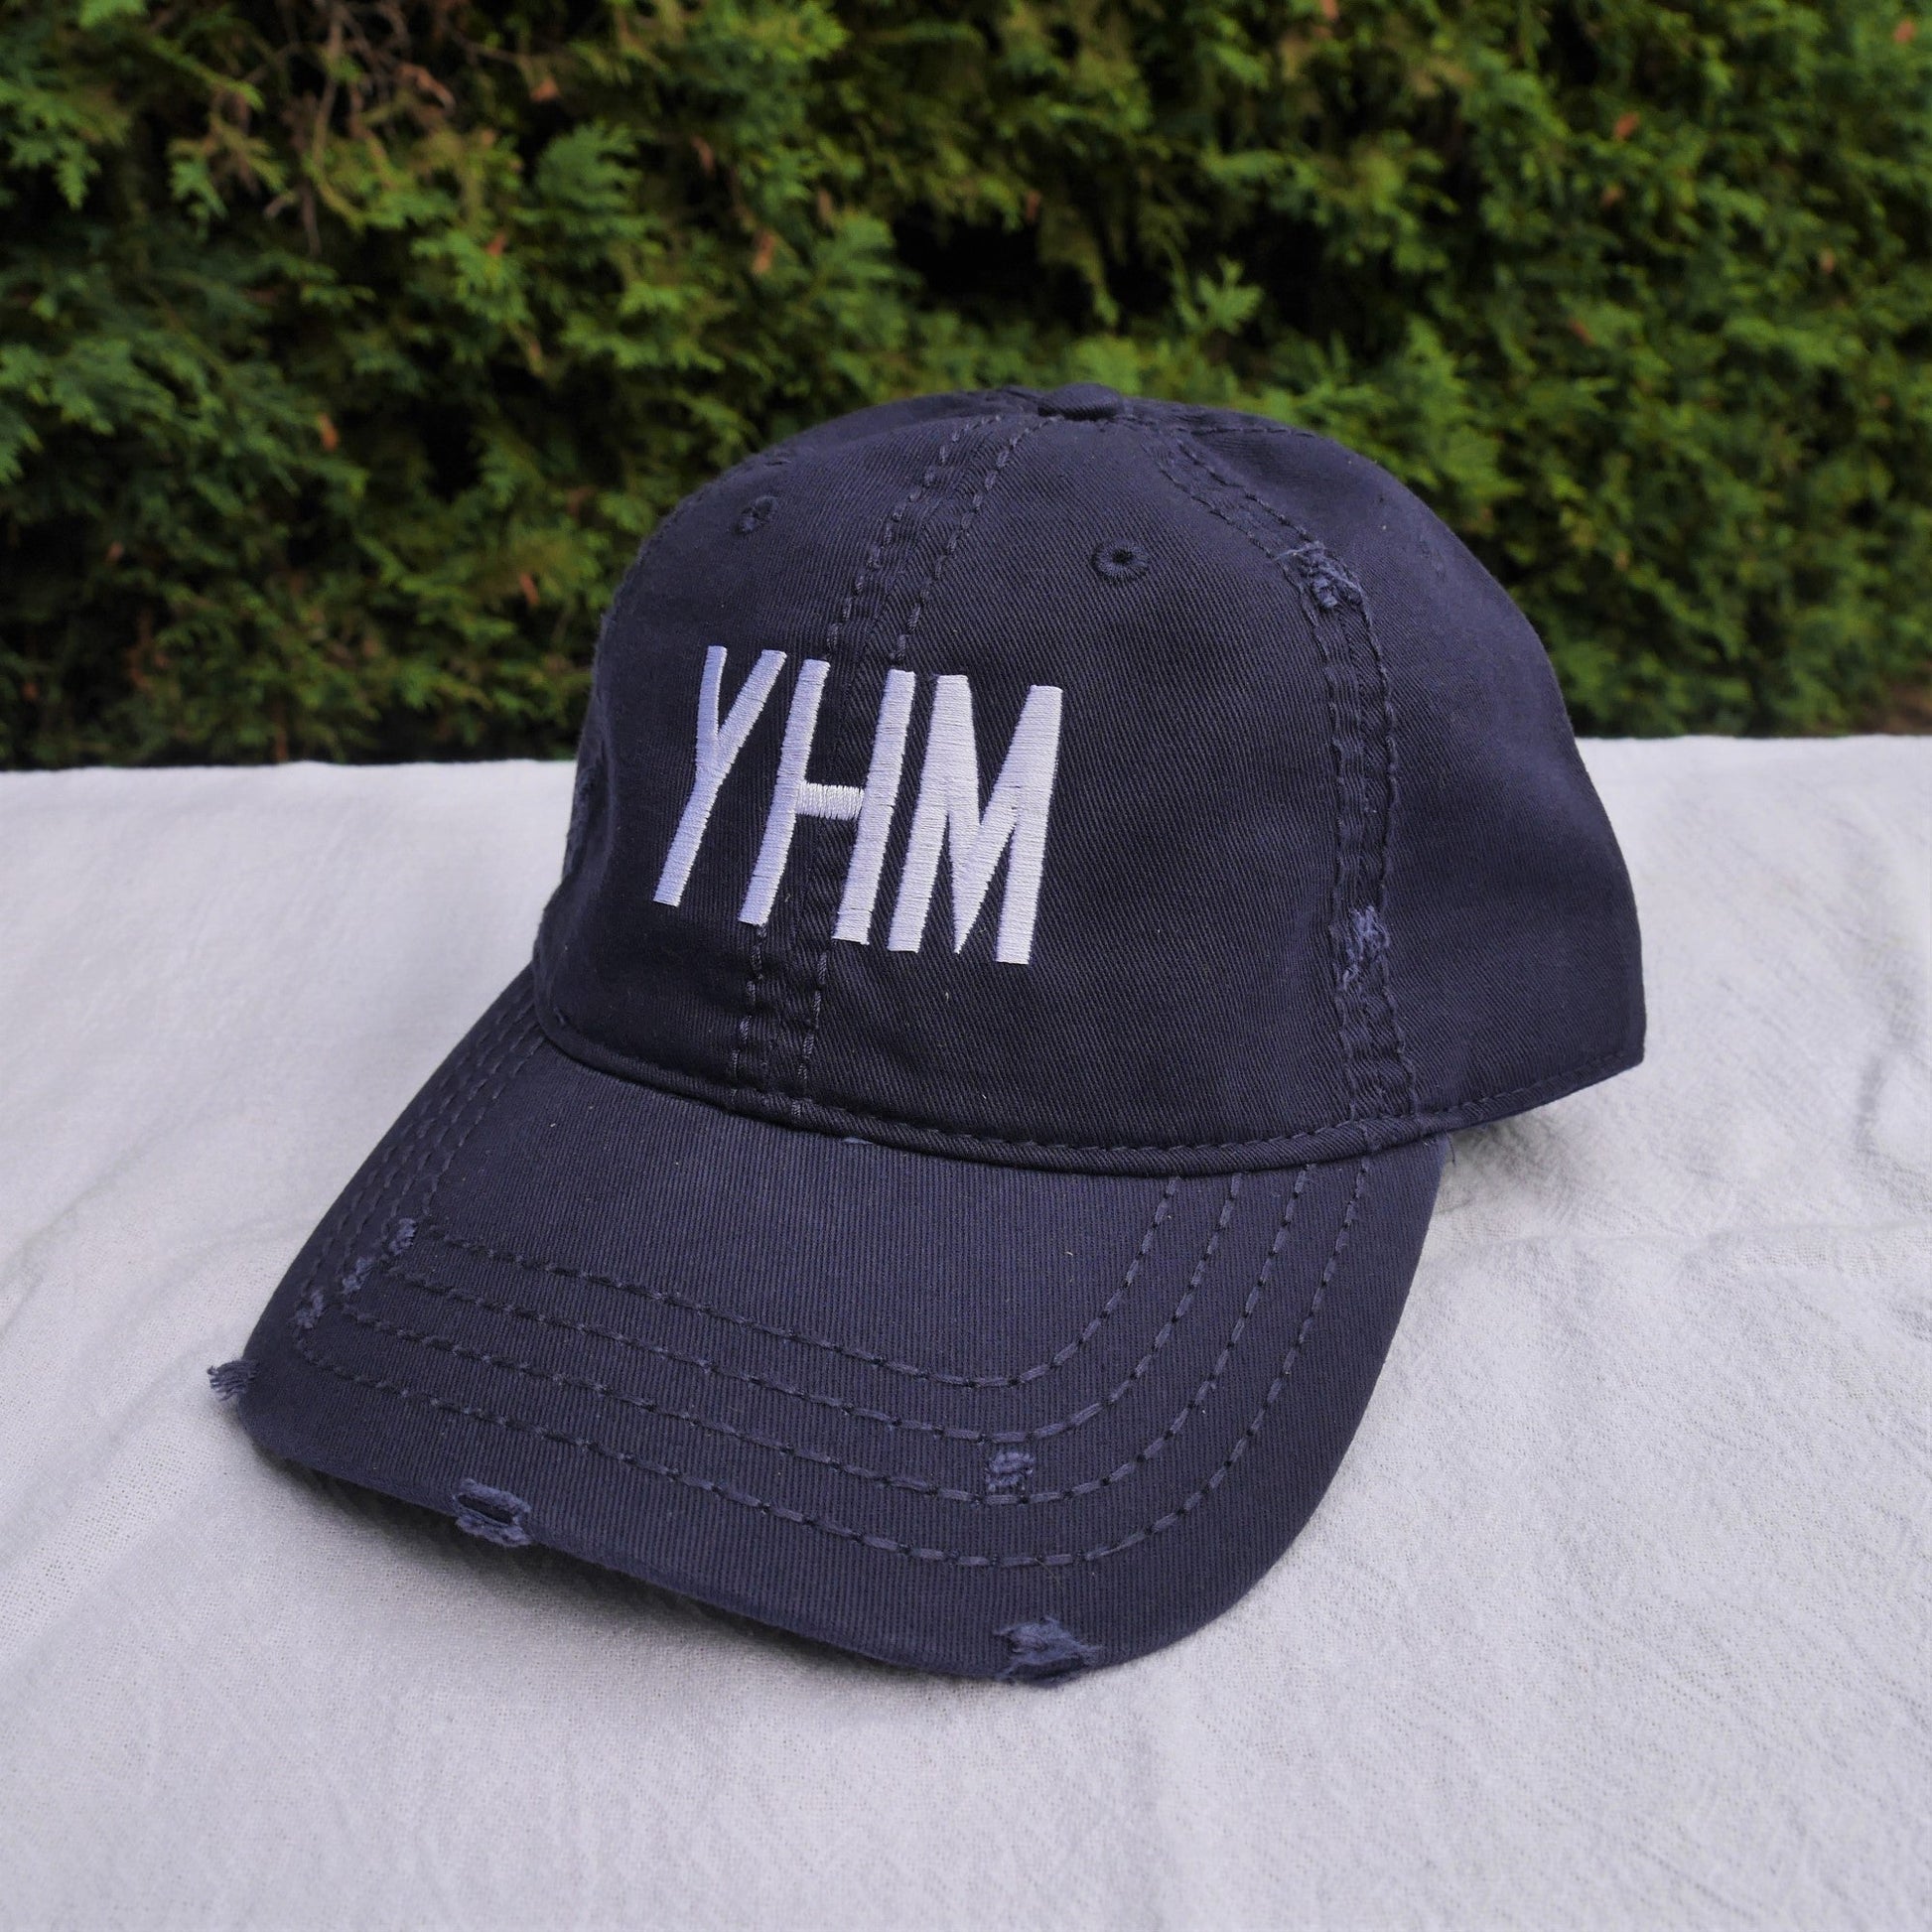 Airport Code Baseball Cap - Black • YUL Montreal • YHM Designs - Image 21